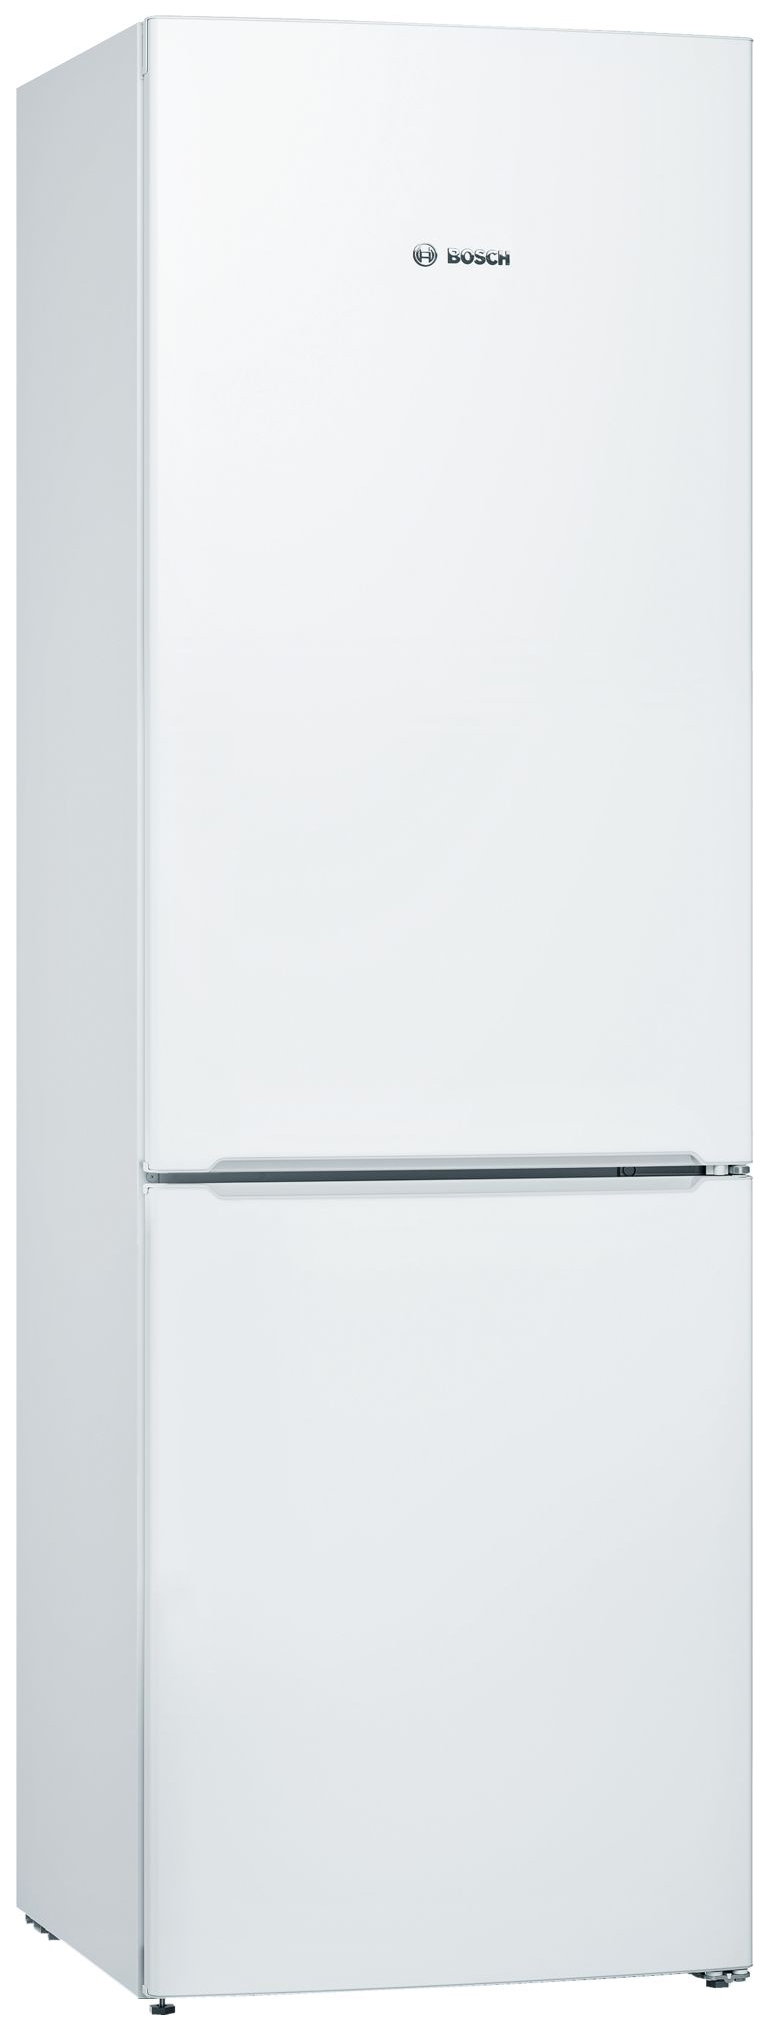 Холодильник Bosch KGV36NW1AR белый навесная панель на двухкамерный холодильник bosch variostyle kgn 39 ij 3 ar со сменной панелью аквамарин